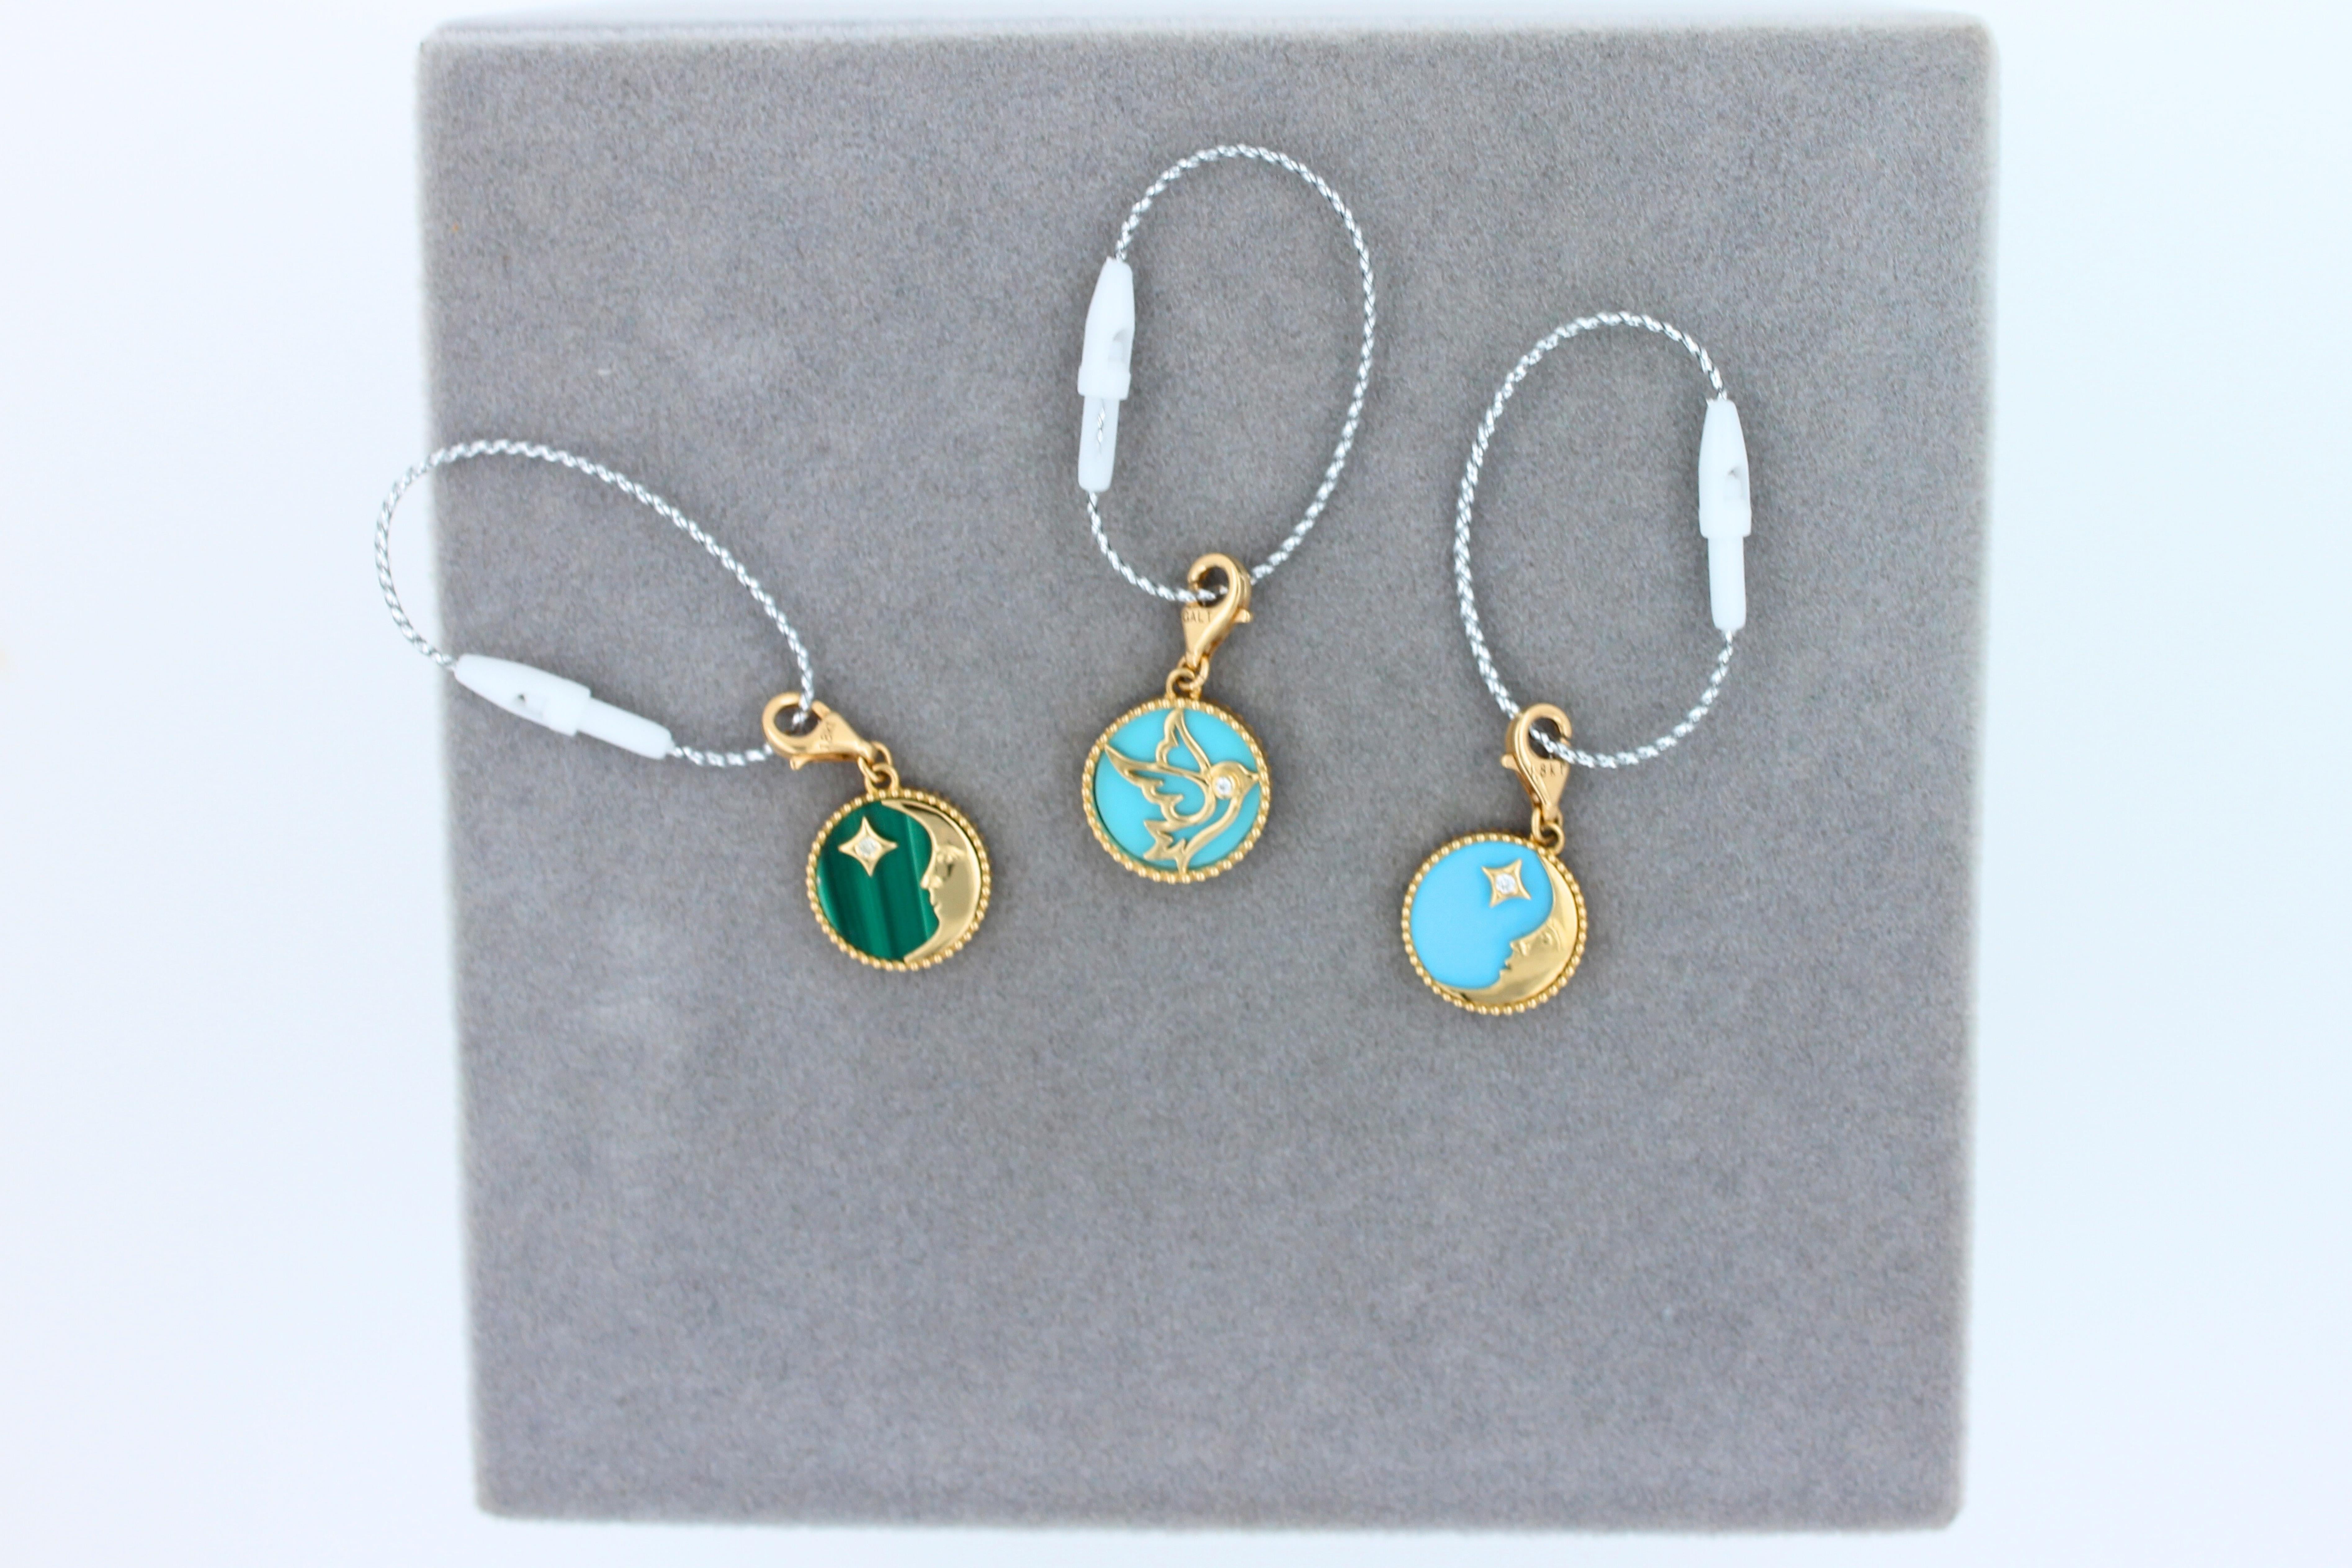 Women's or Men's Diamond Zodiac Moon Star Teal Blue Turquoise 18K Gold Pendant Charm Medallion